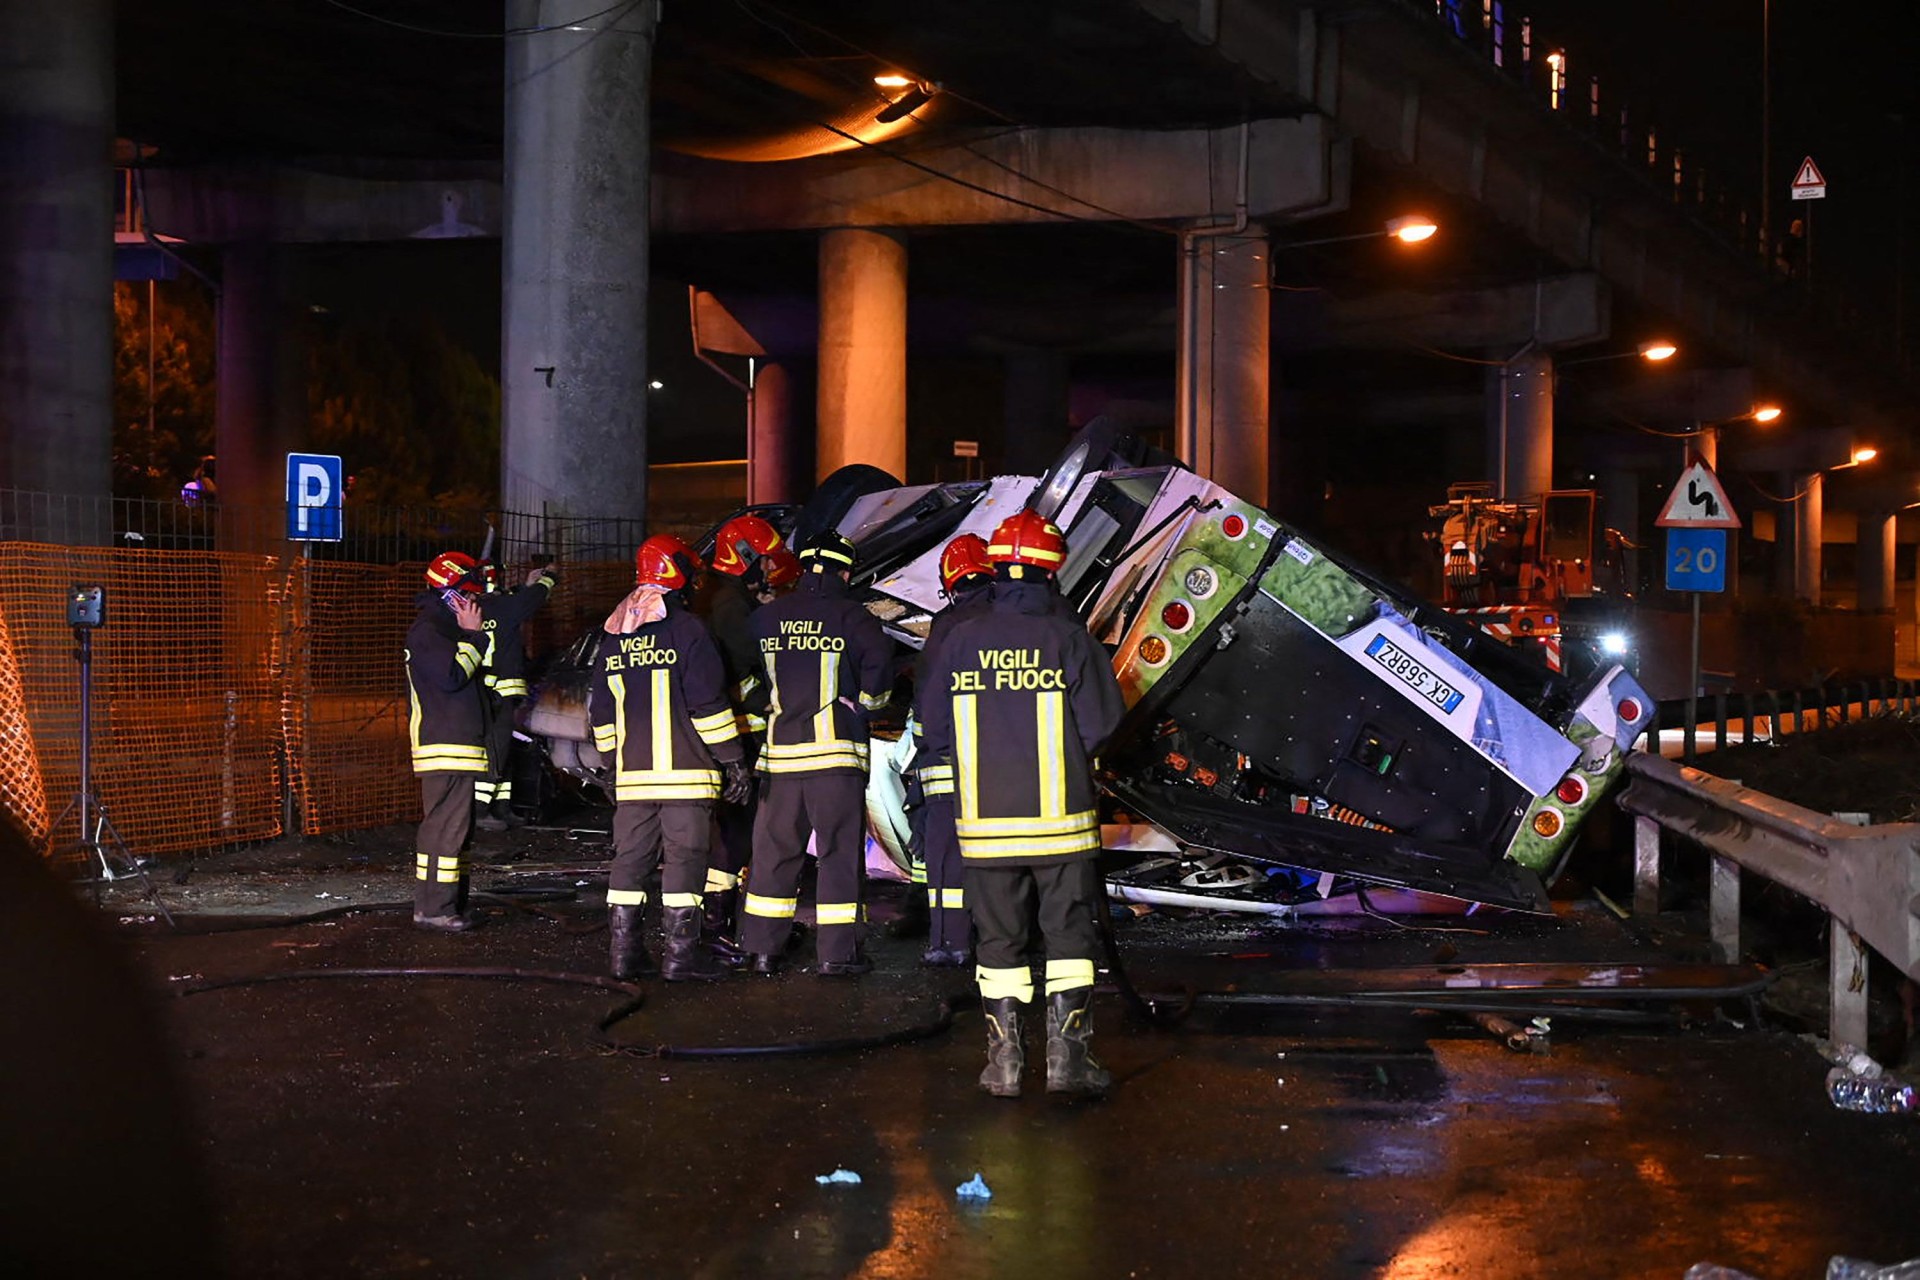 Patru români au murit în accidentul de autocar din Italia